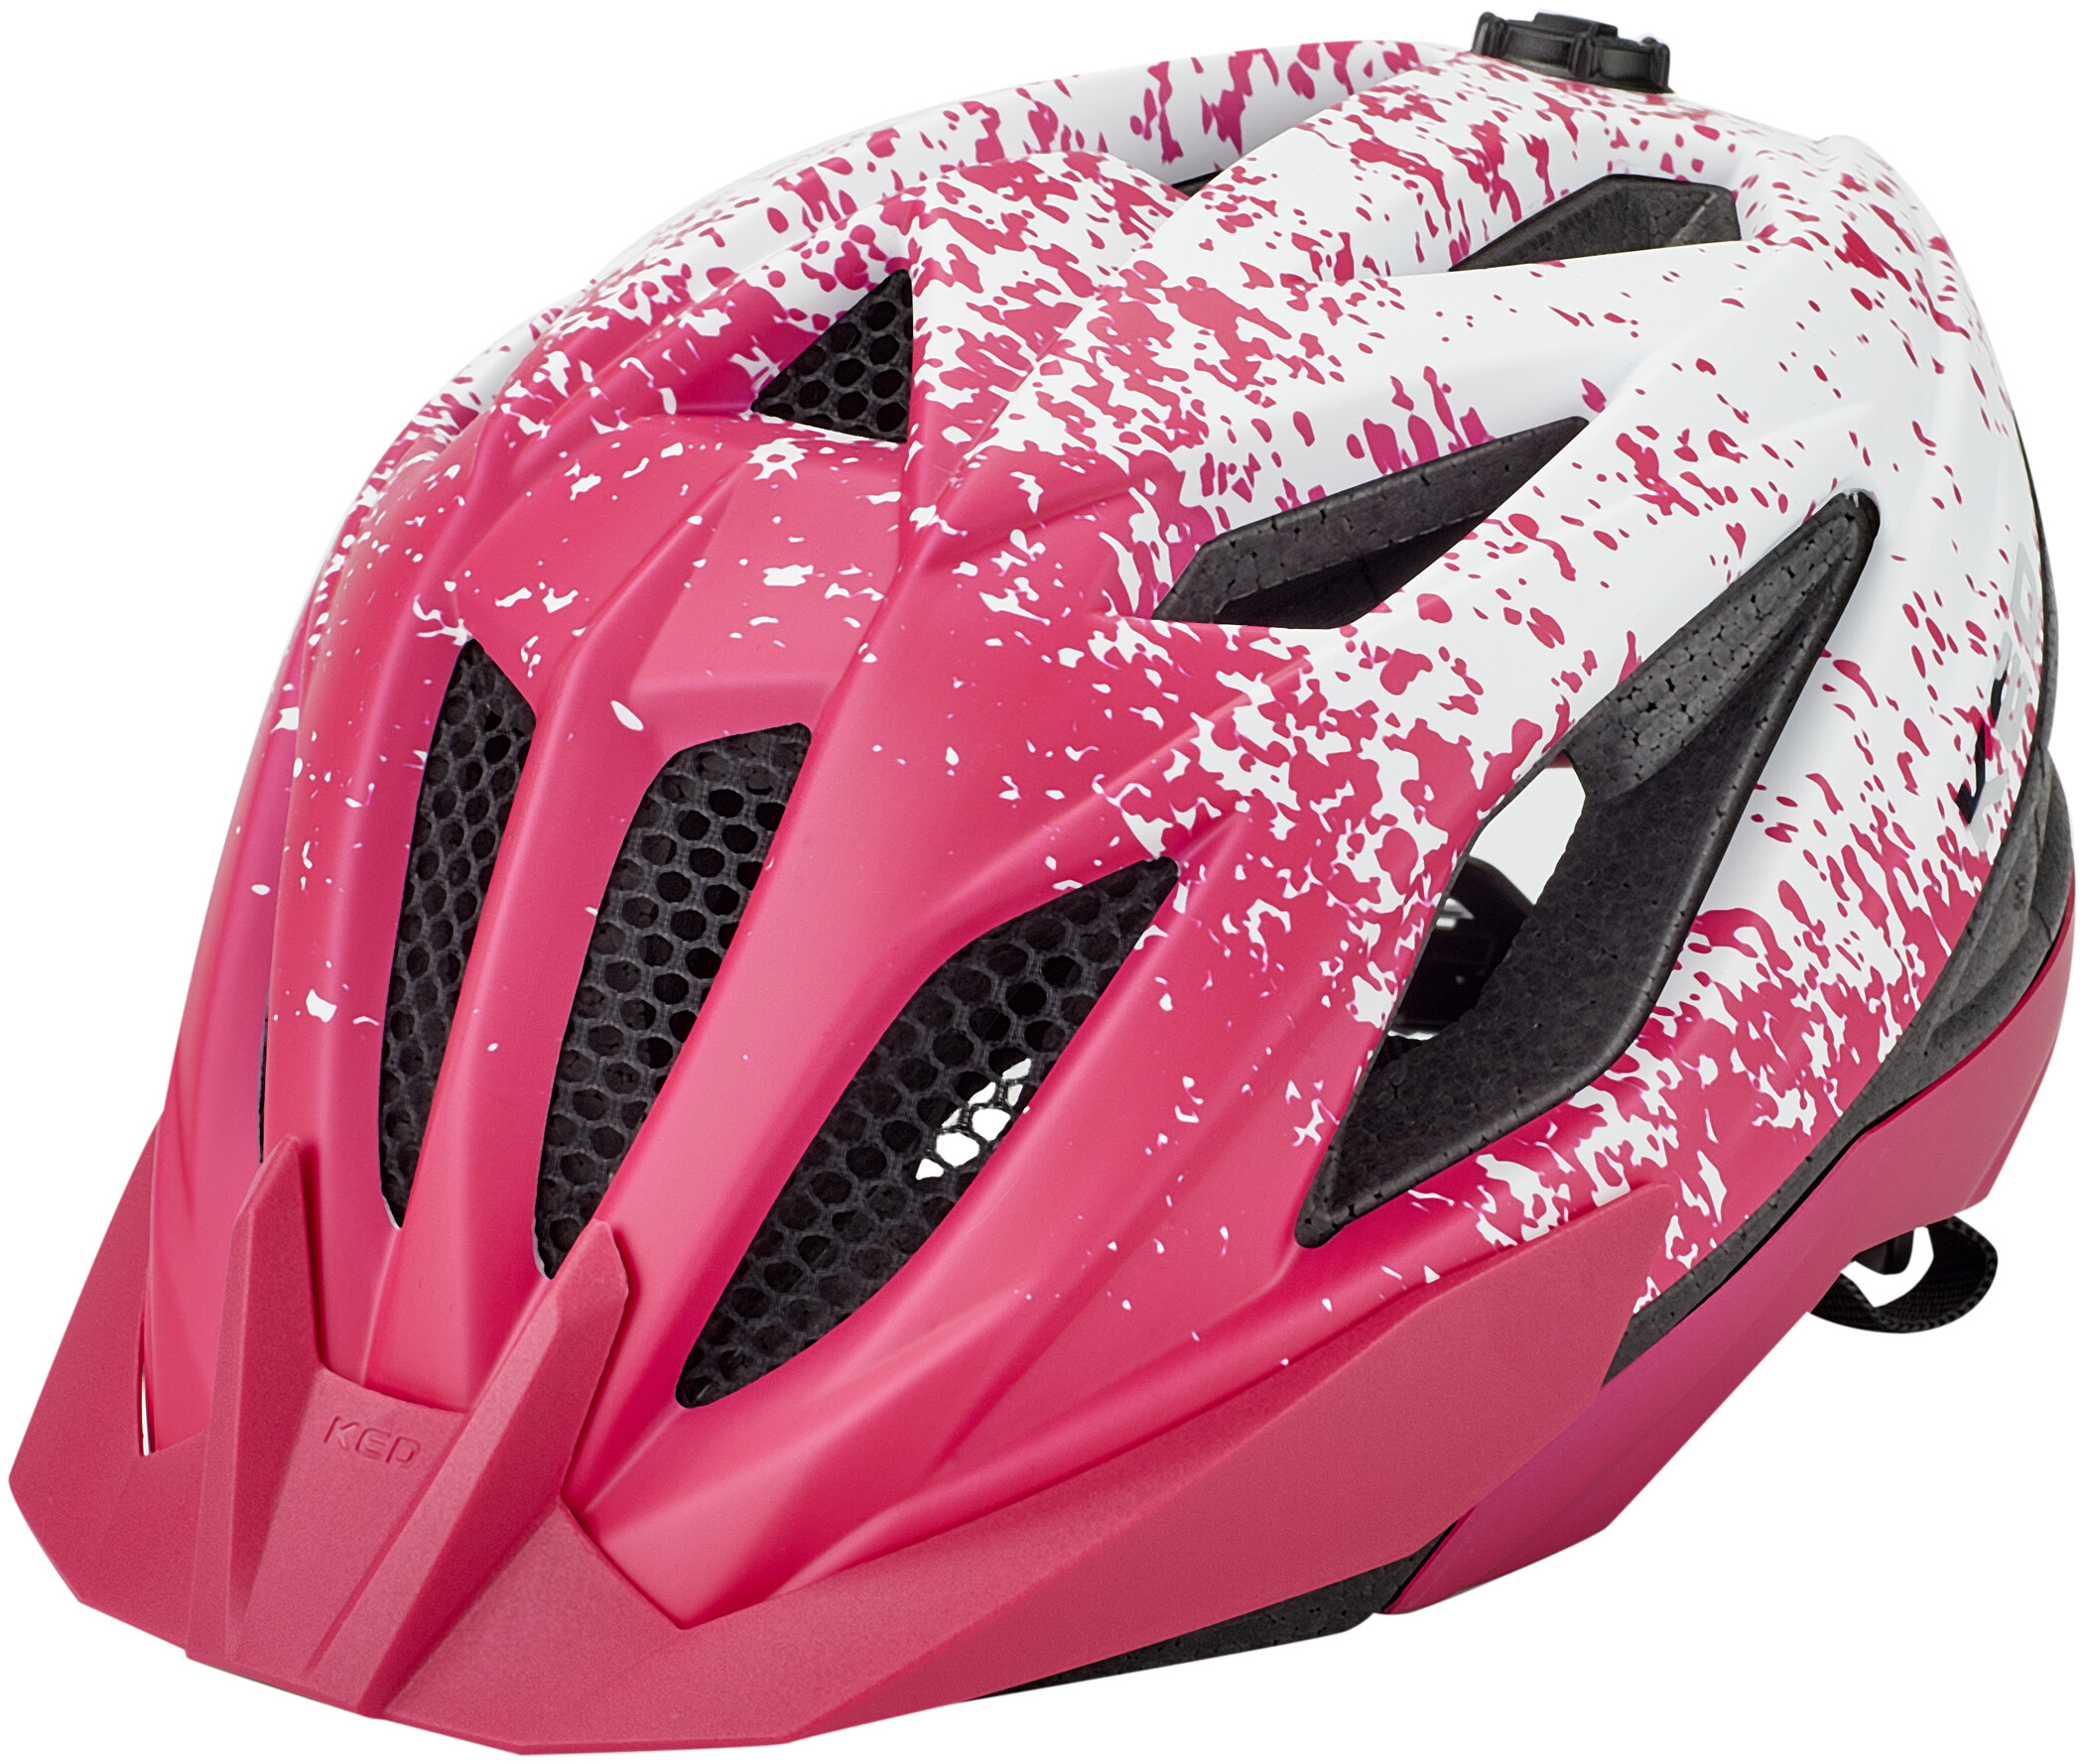 KED Mädchen Fahrradhelm Jugend Helm STATUS JUNIOR pink Gr S 49-54cm o M 52-59cm 